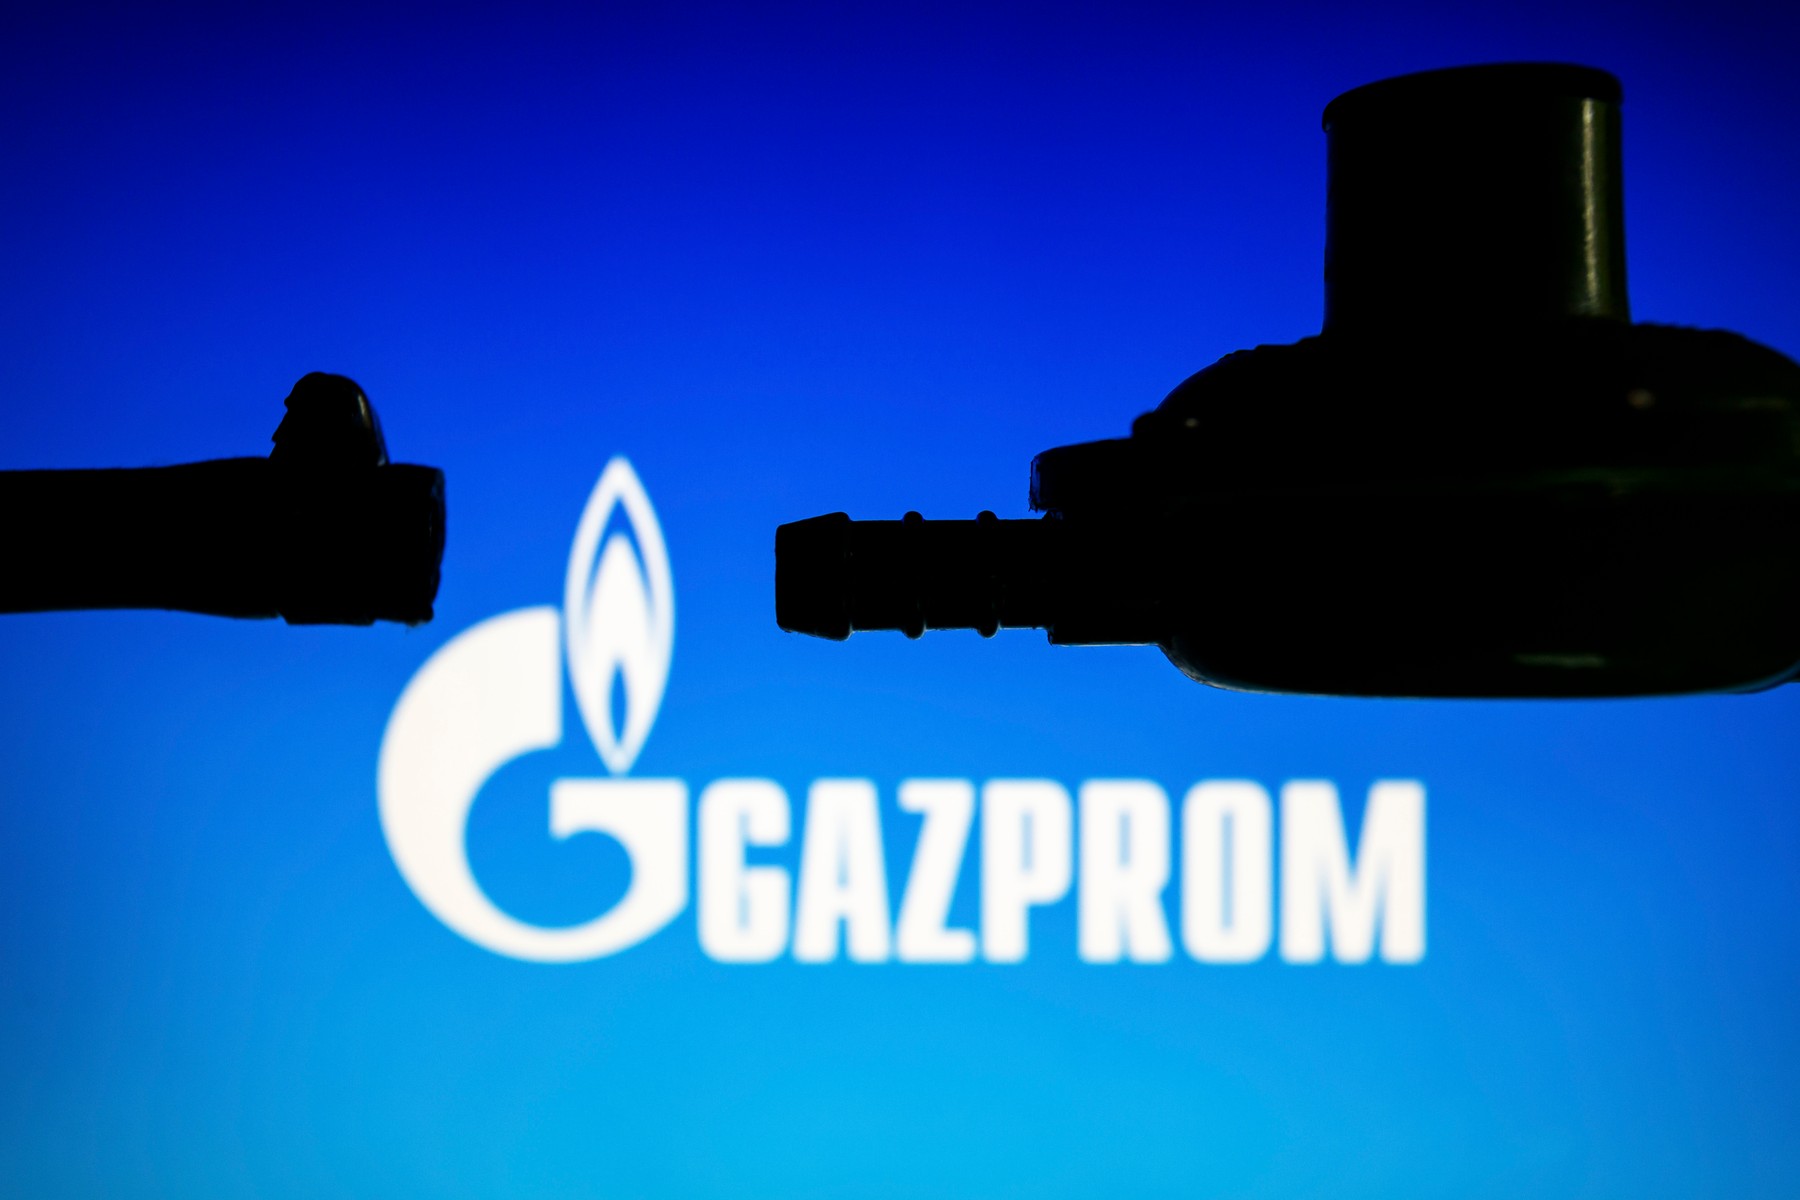 Actiunile Gazprom au scazut cu peste 30% dupa ce acţionarii au respins plata dividendelor pentru 2021